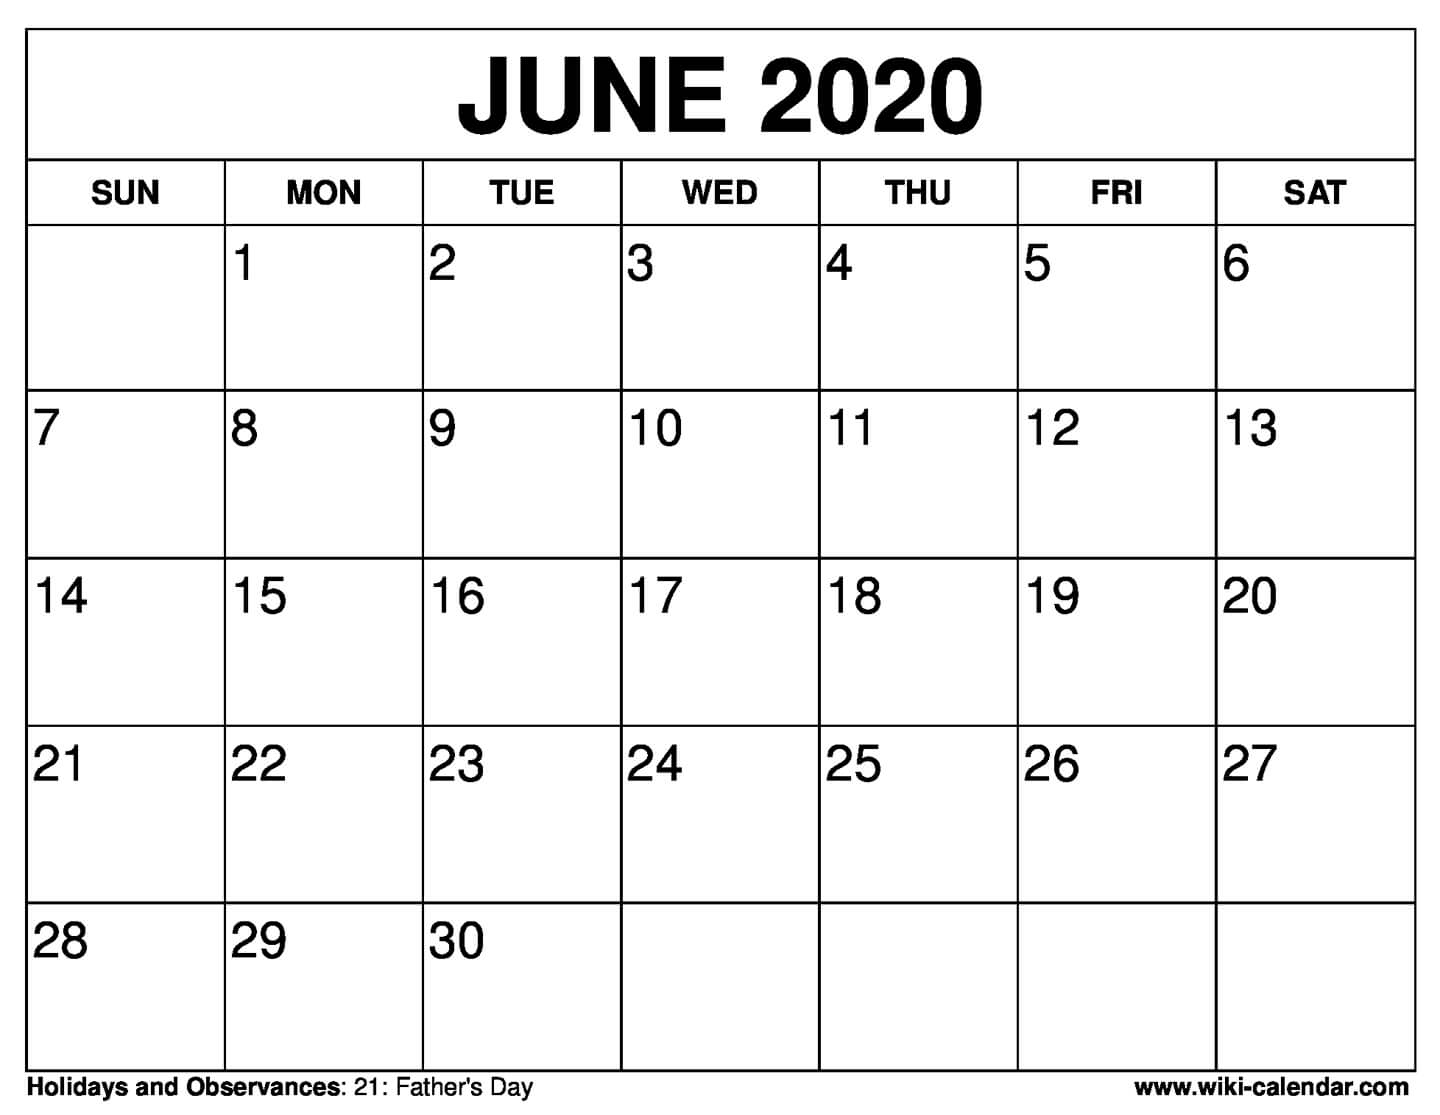 Free June Printable Calendar